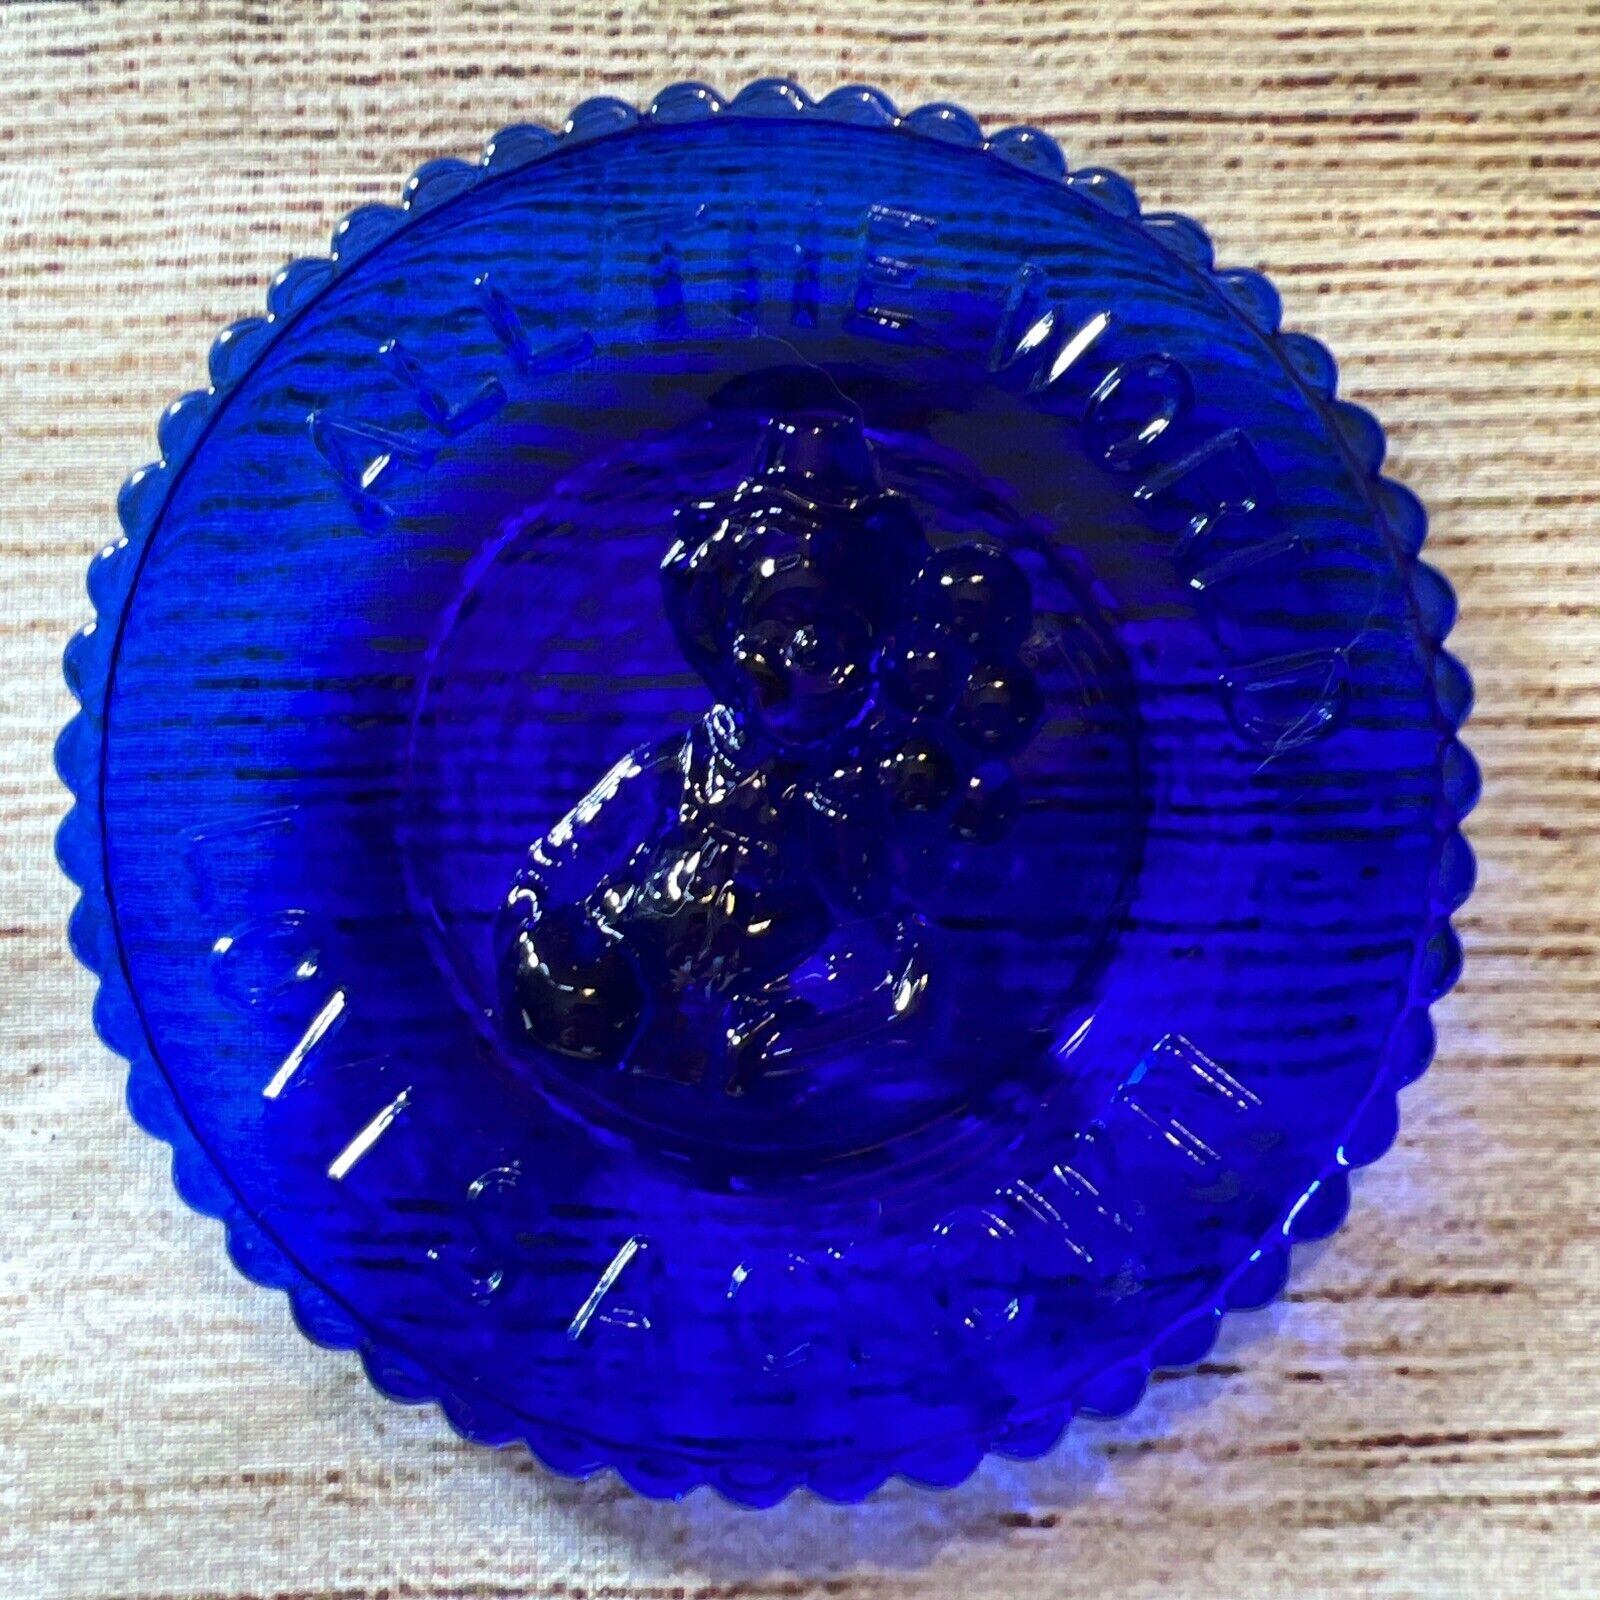 Mosser Art Glass “ All The World Loves A Clown “ Cup Plate In Cobalt Blue 3.5”